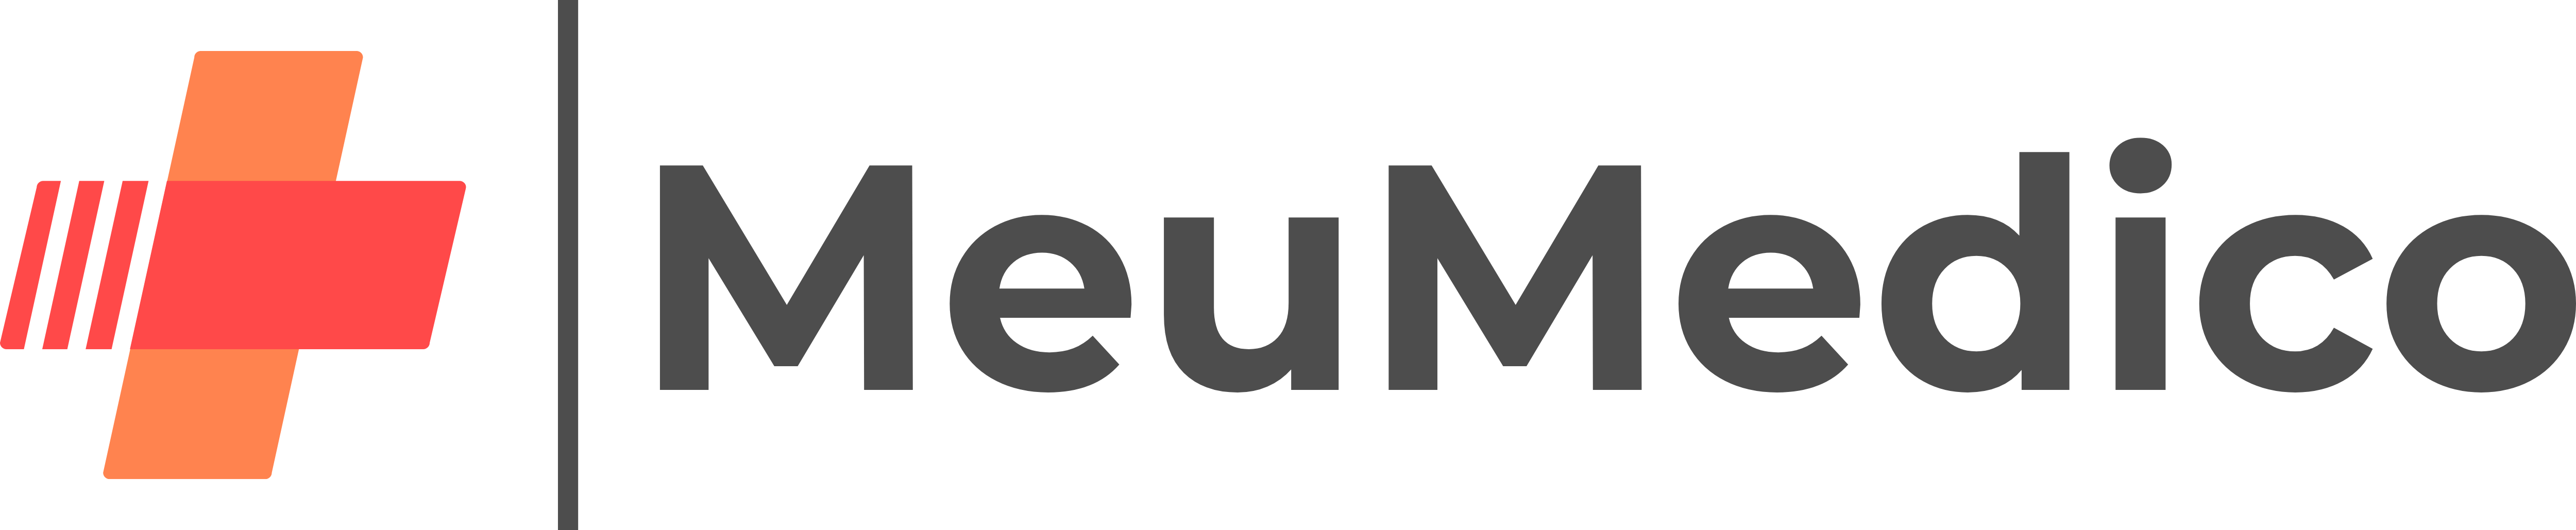 MeuMedico Logo